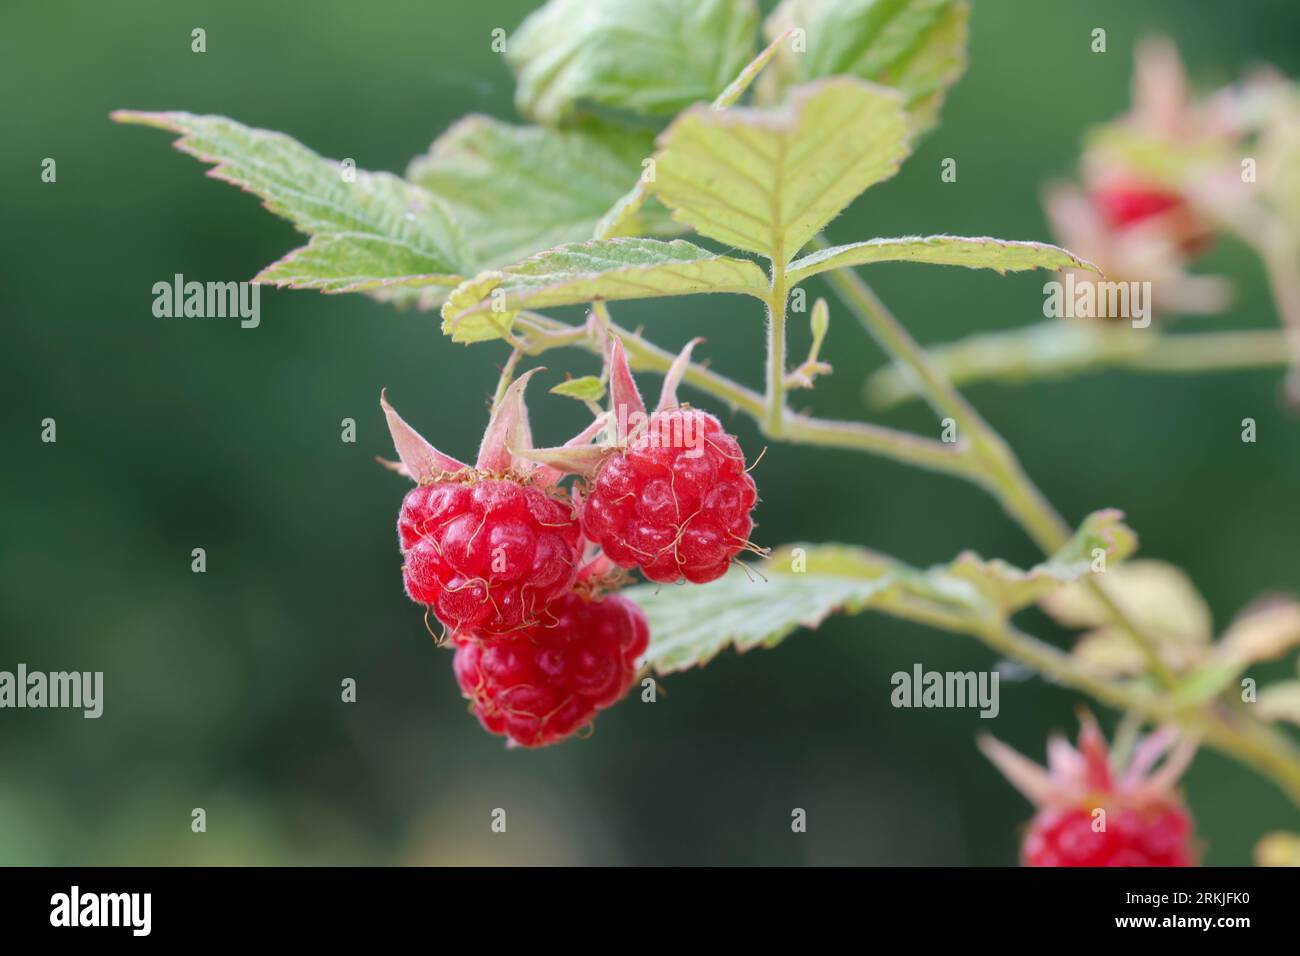 Wilde Himbeere, Himbeere, Himbeeren, Früchte, Beeren, Rubus idaeus, Raspberry, Rasp-berry, la framboise Foto Stock